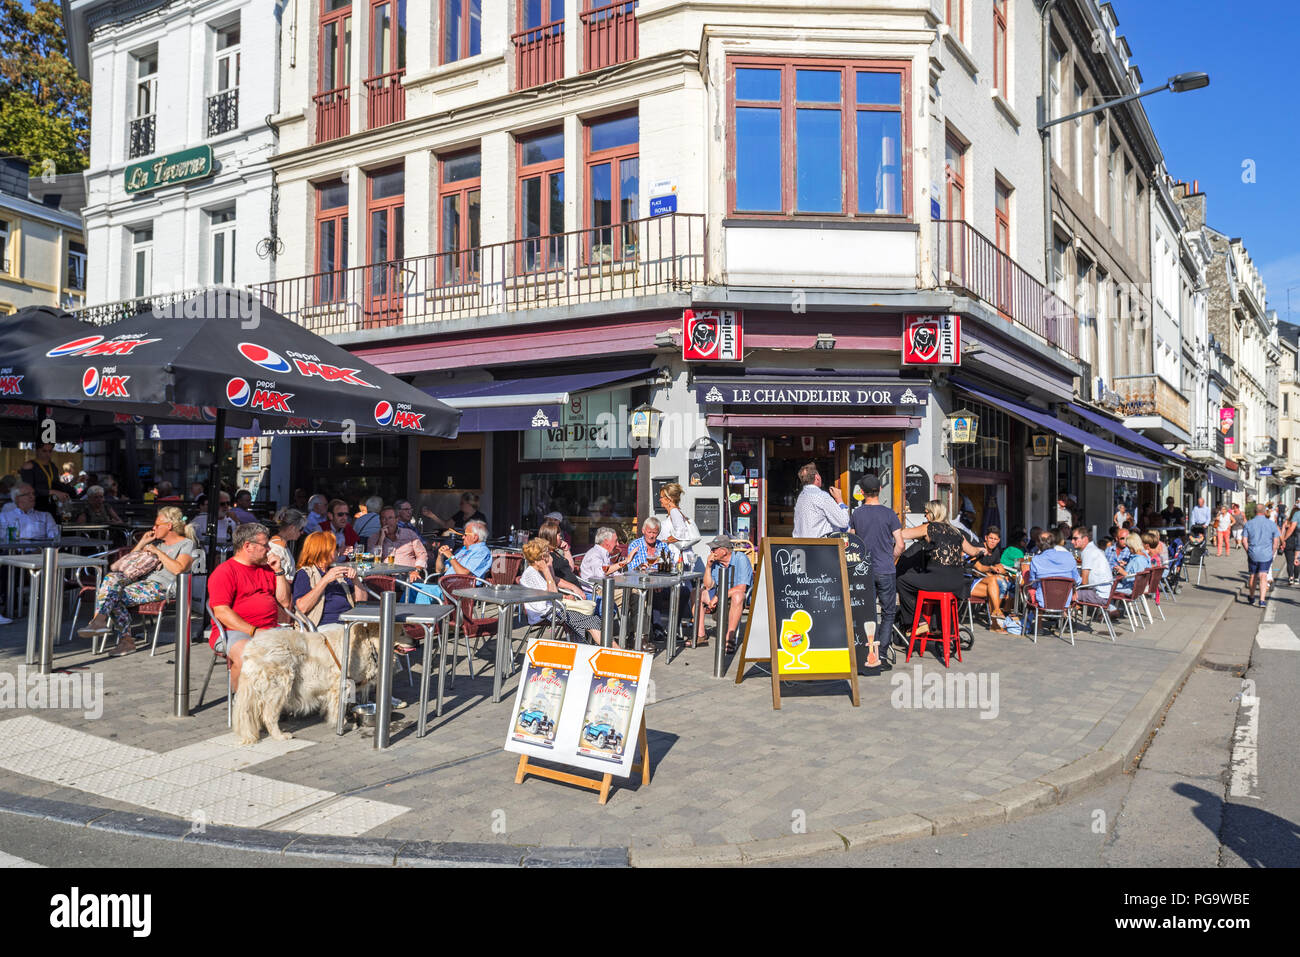 Les touristes appréciant la bière belge sur l'asphalte café en été dans la ville Spa, Liège, Belgique Banque D'Images